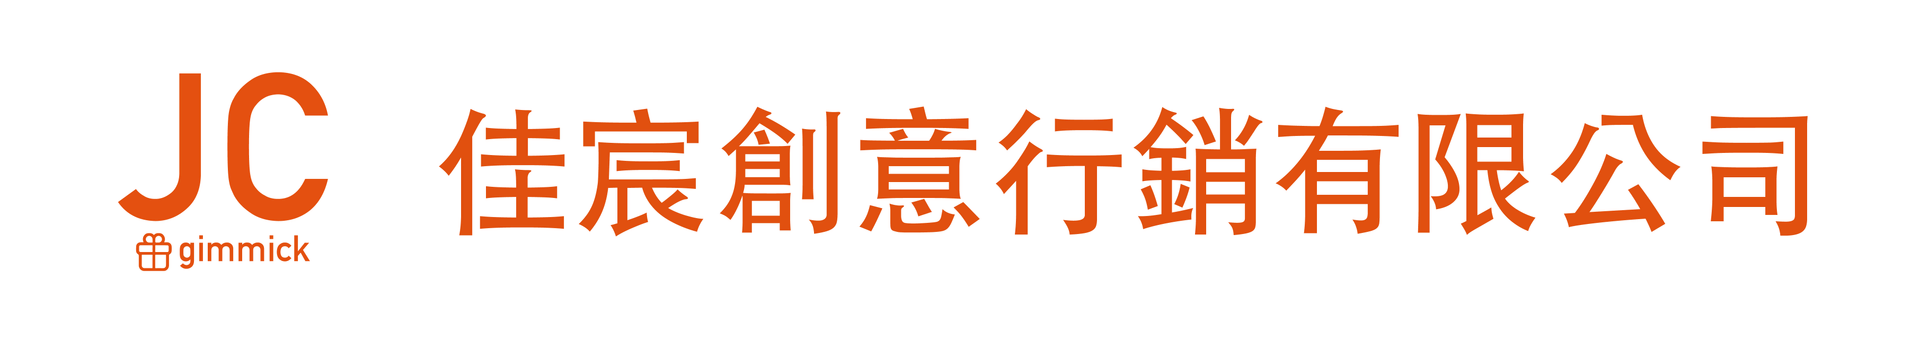 佳宸創意行銷有限公司Logo